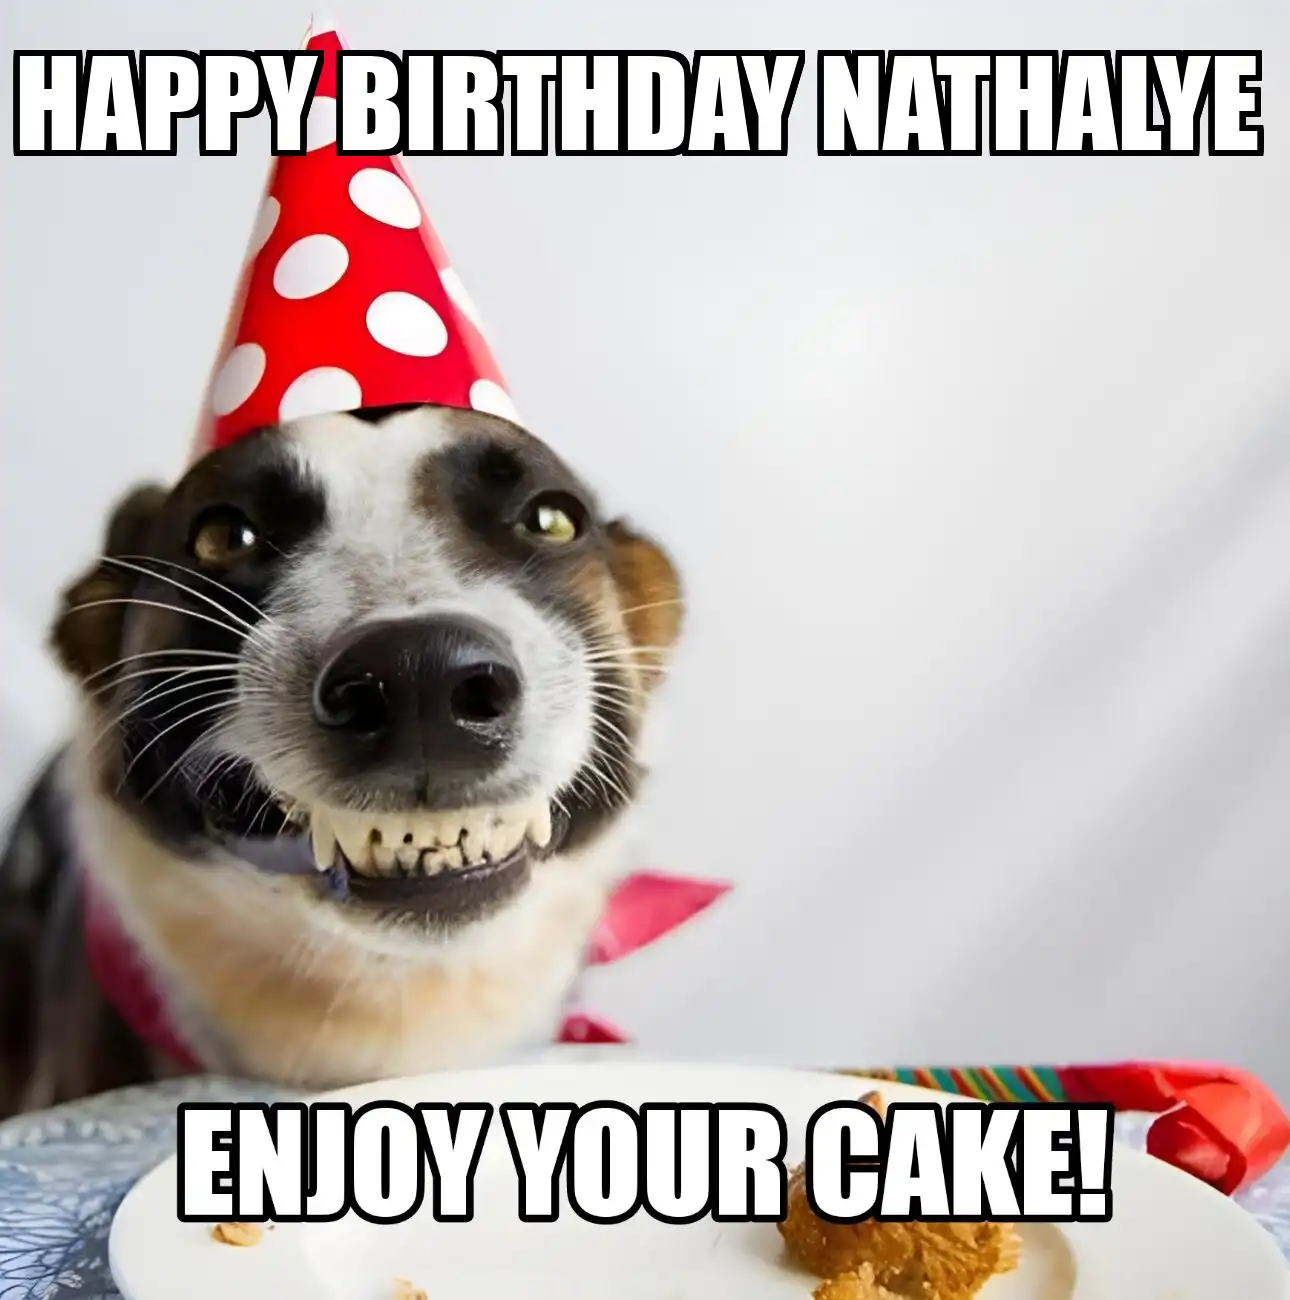 Happy Birthday Nathalye Enjoy Your Cake Dog Meme